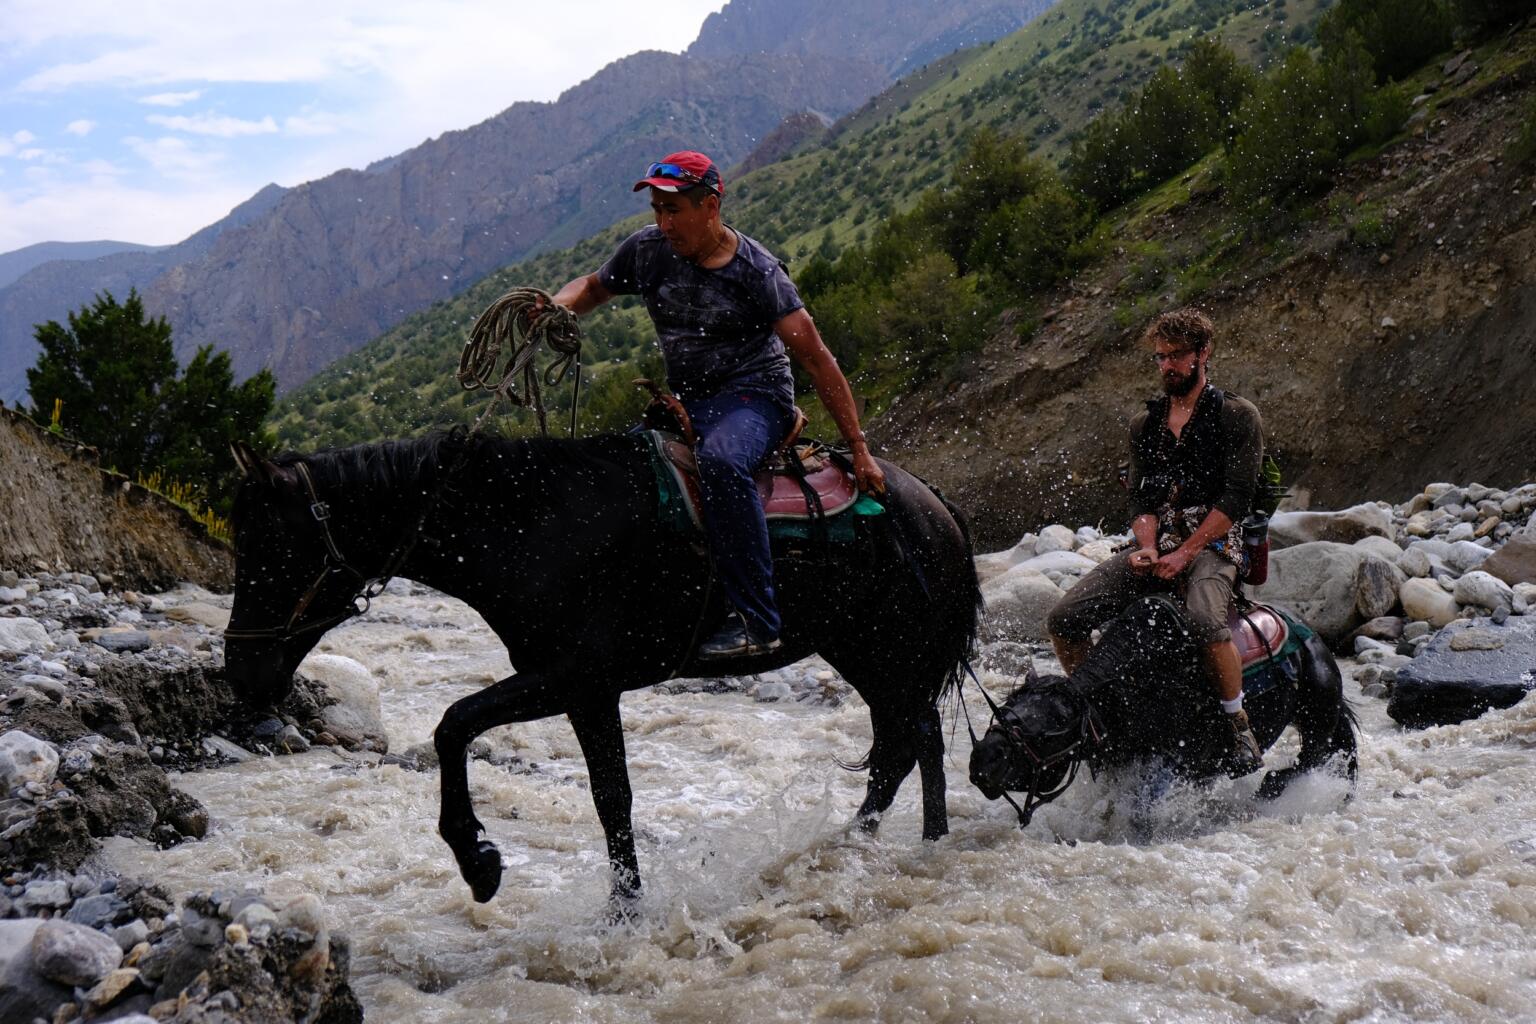 riding a horse safely in kyrgyzstan